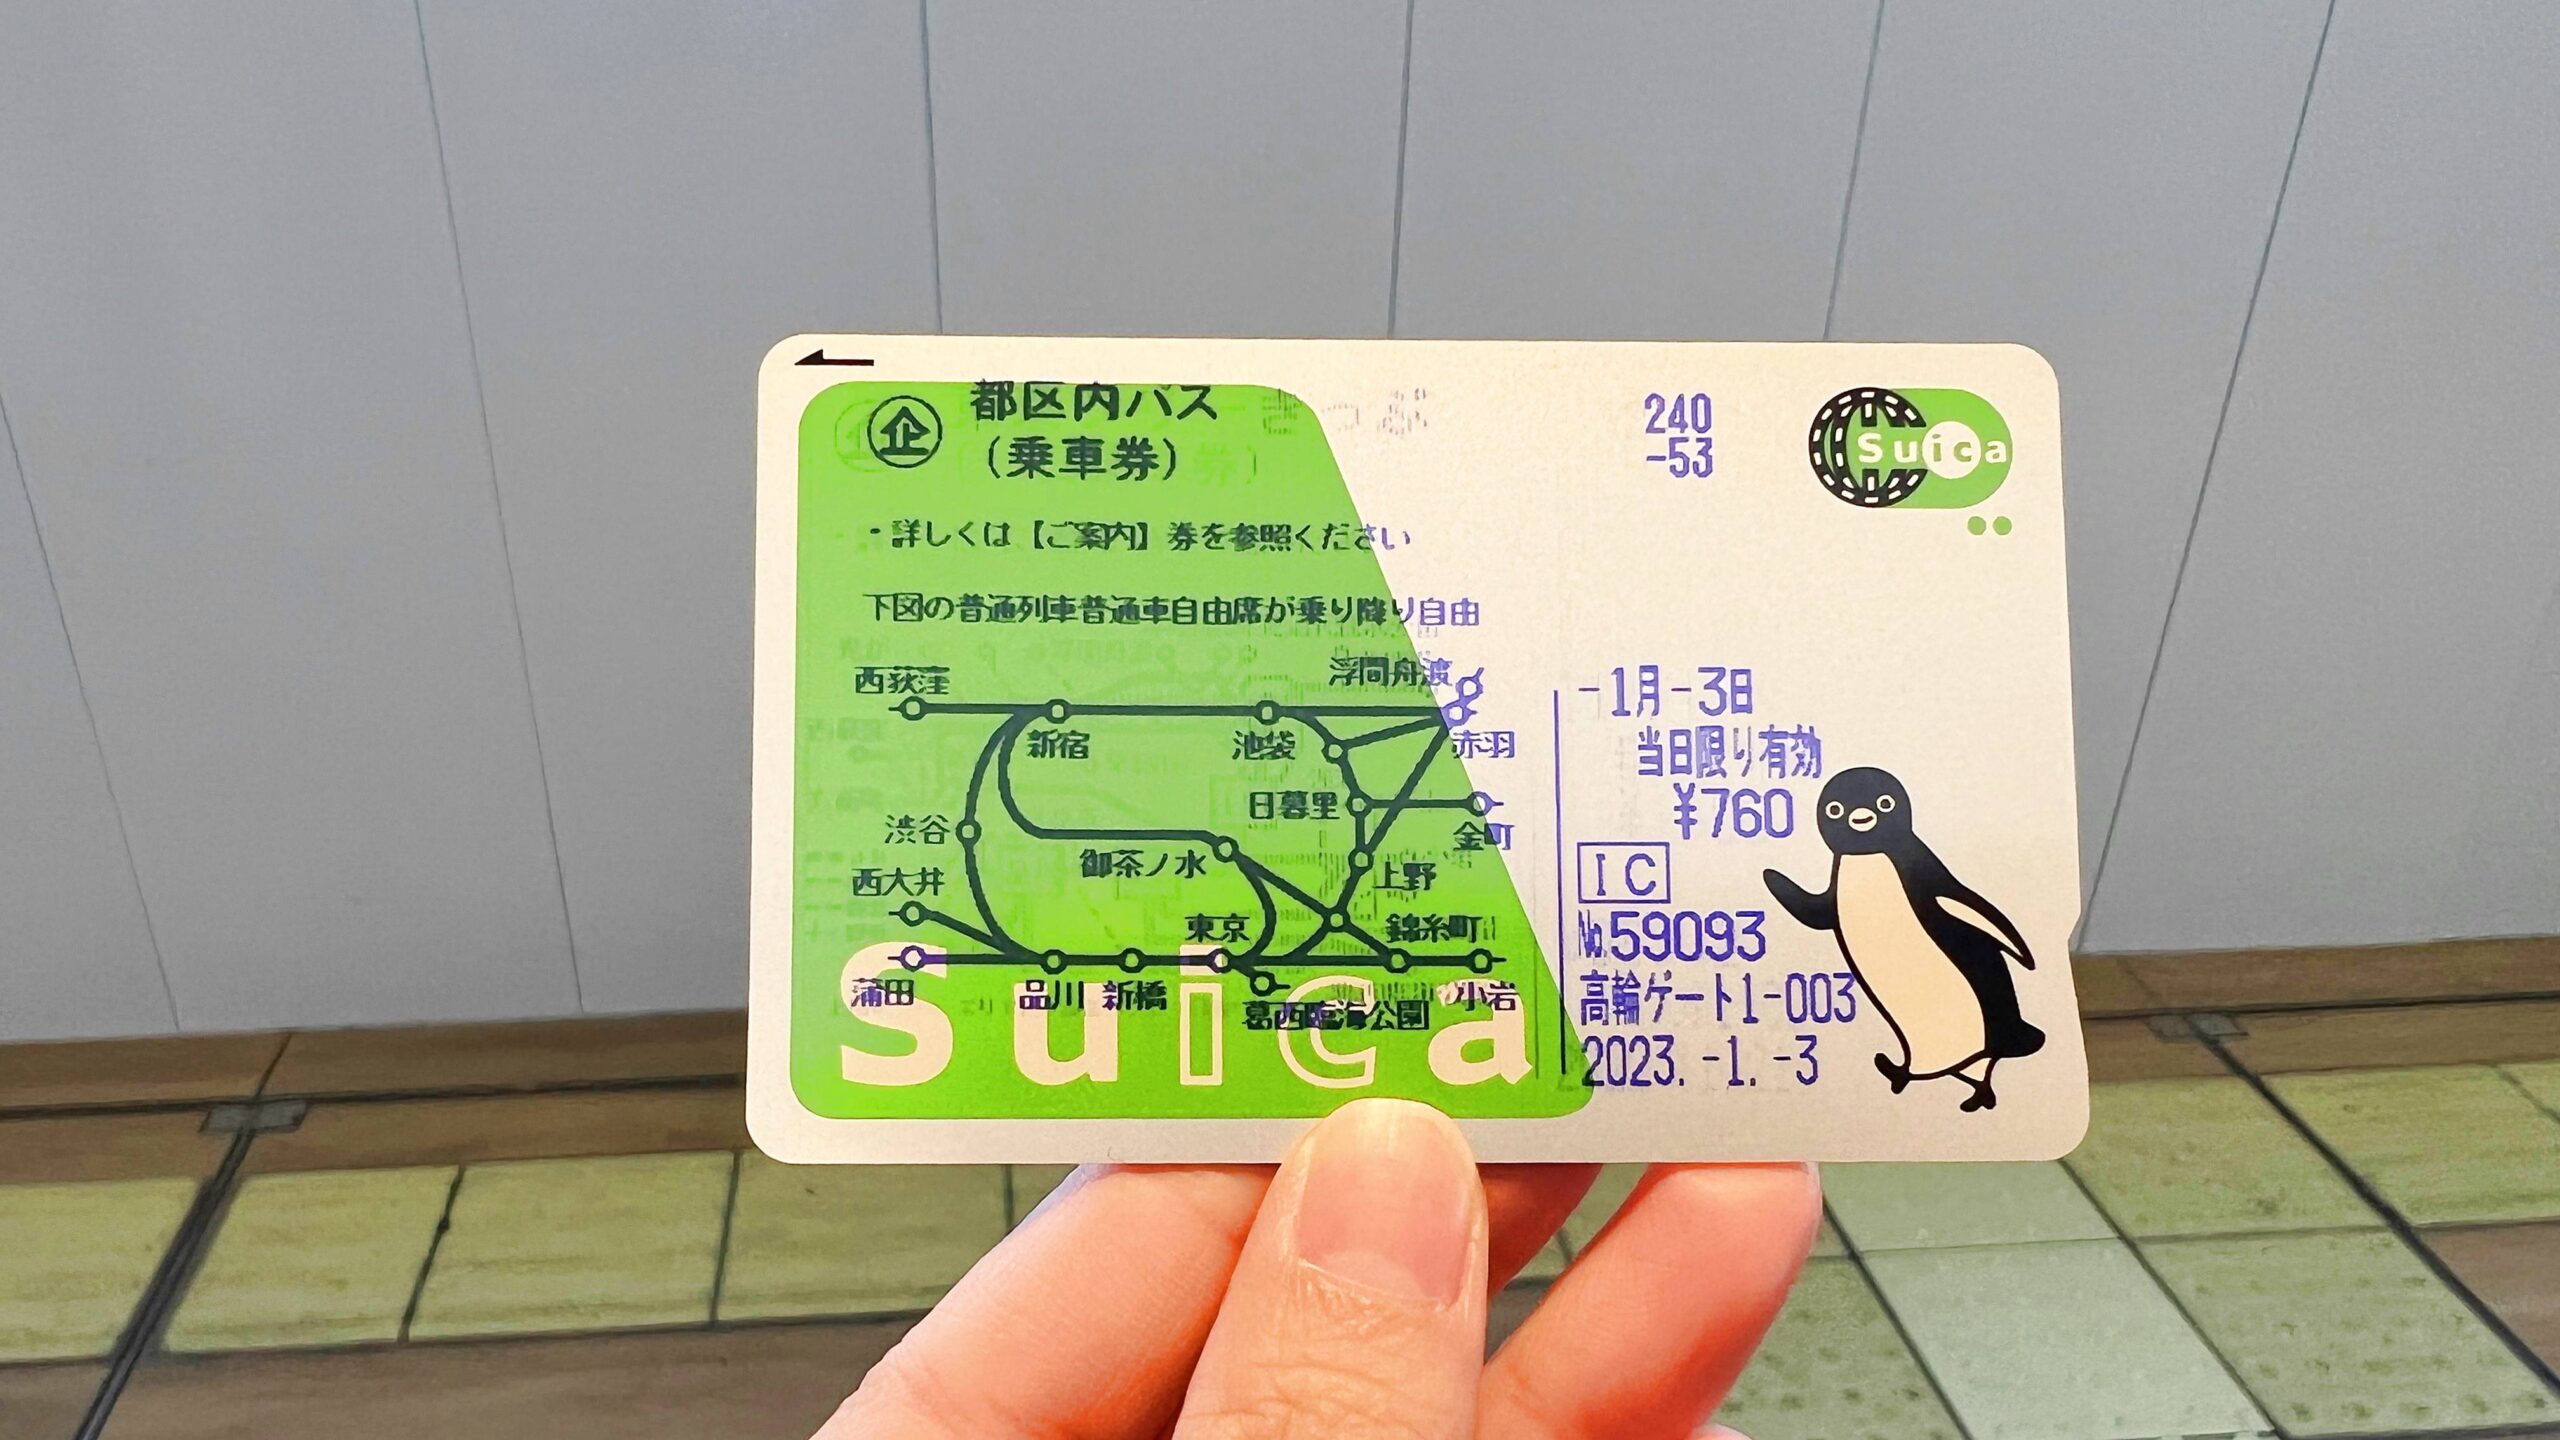 東京，是第一次出國旅行的初戀。久違了幾年，不妨利用東京Metro地鐵一日通票再次重逢你我好熟悉的東京經典地標 @。CJ夫人。